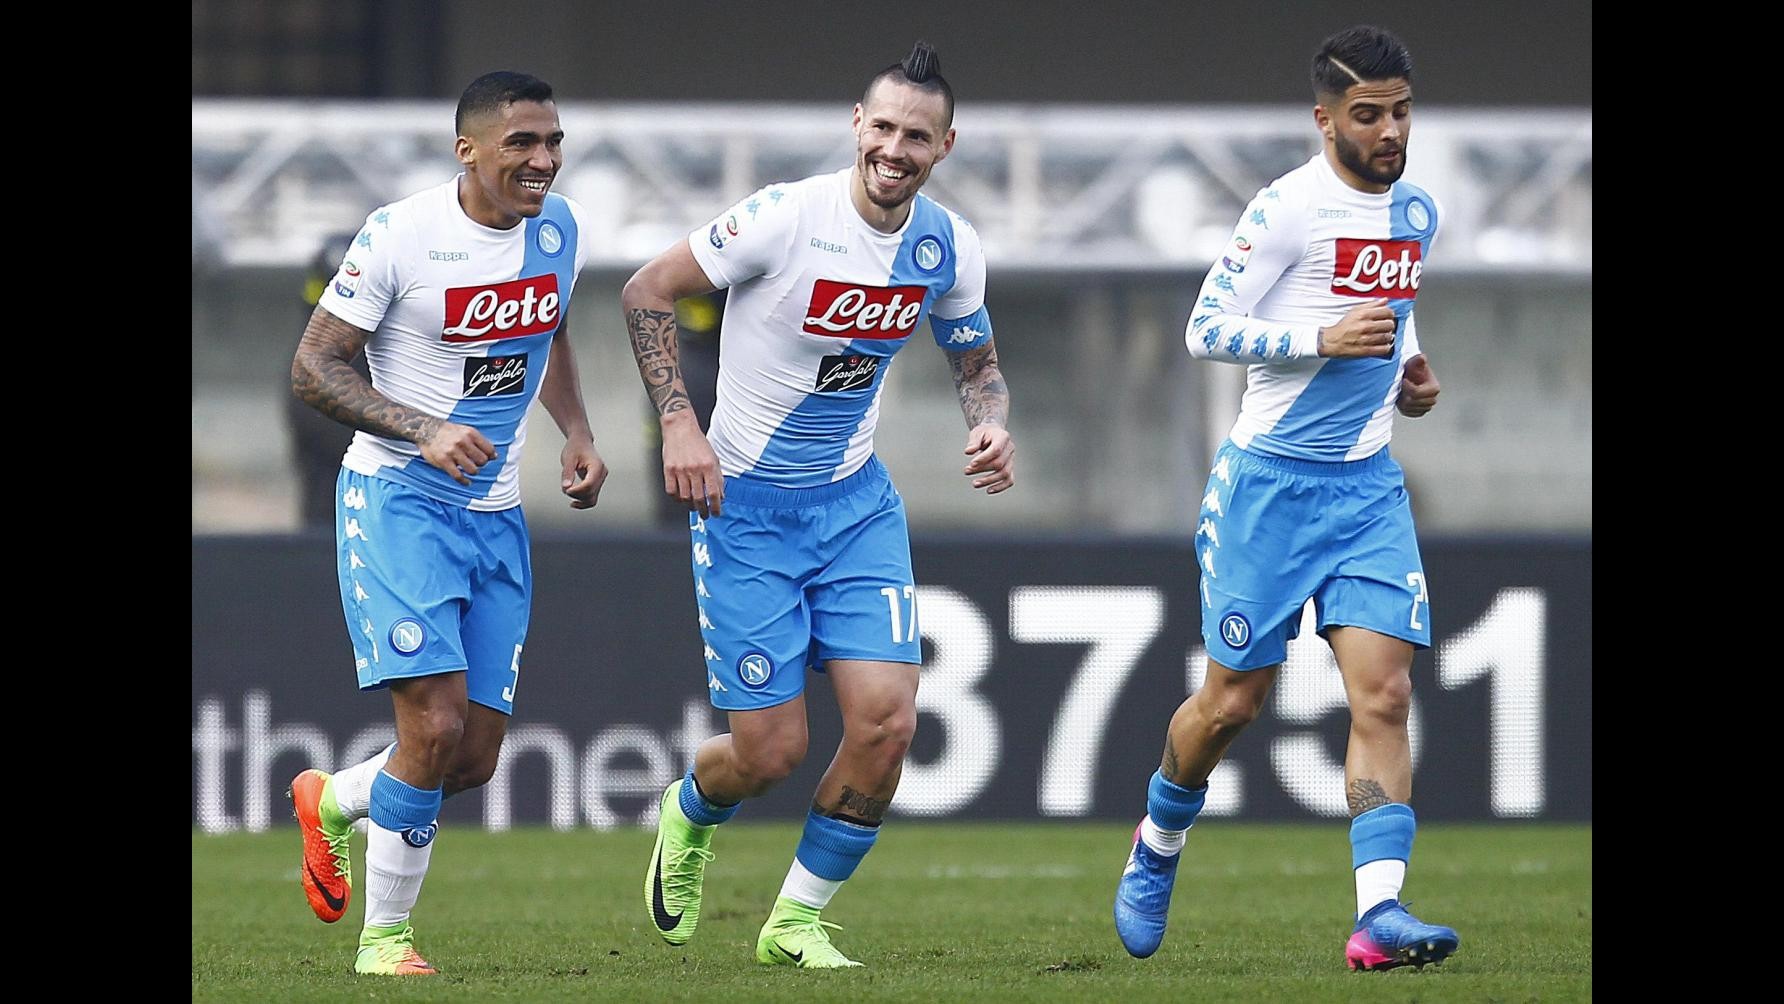 FOTO Serie A, Napoli stende Chievo 3-1 in trasferta